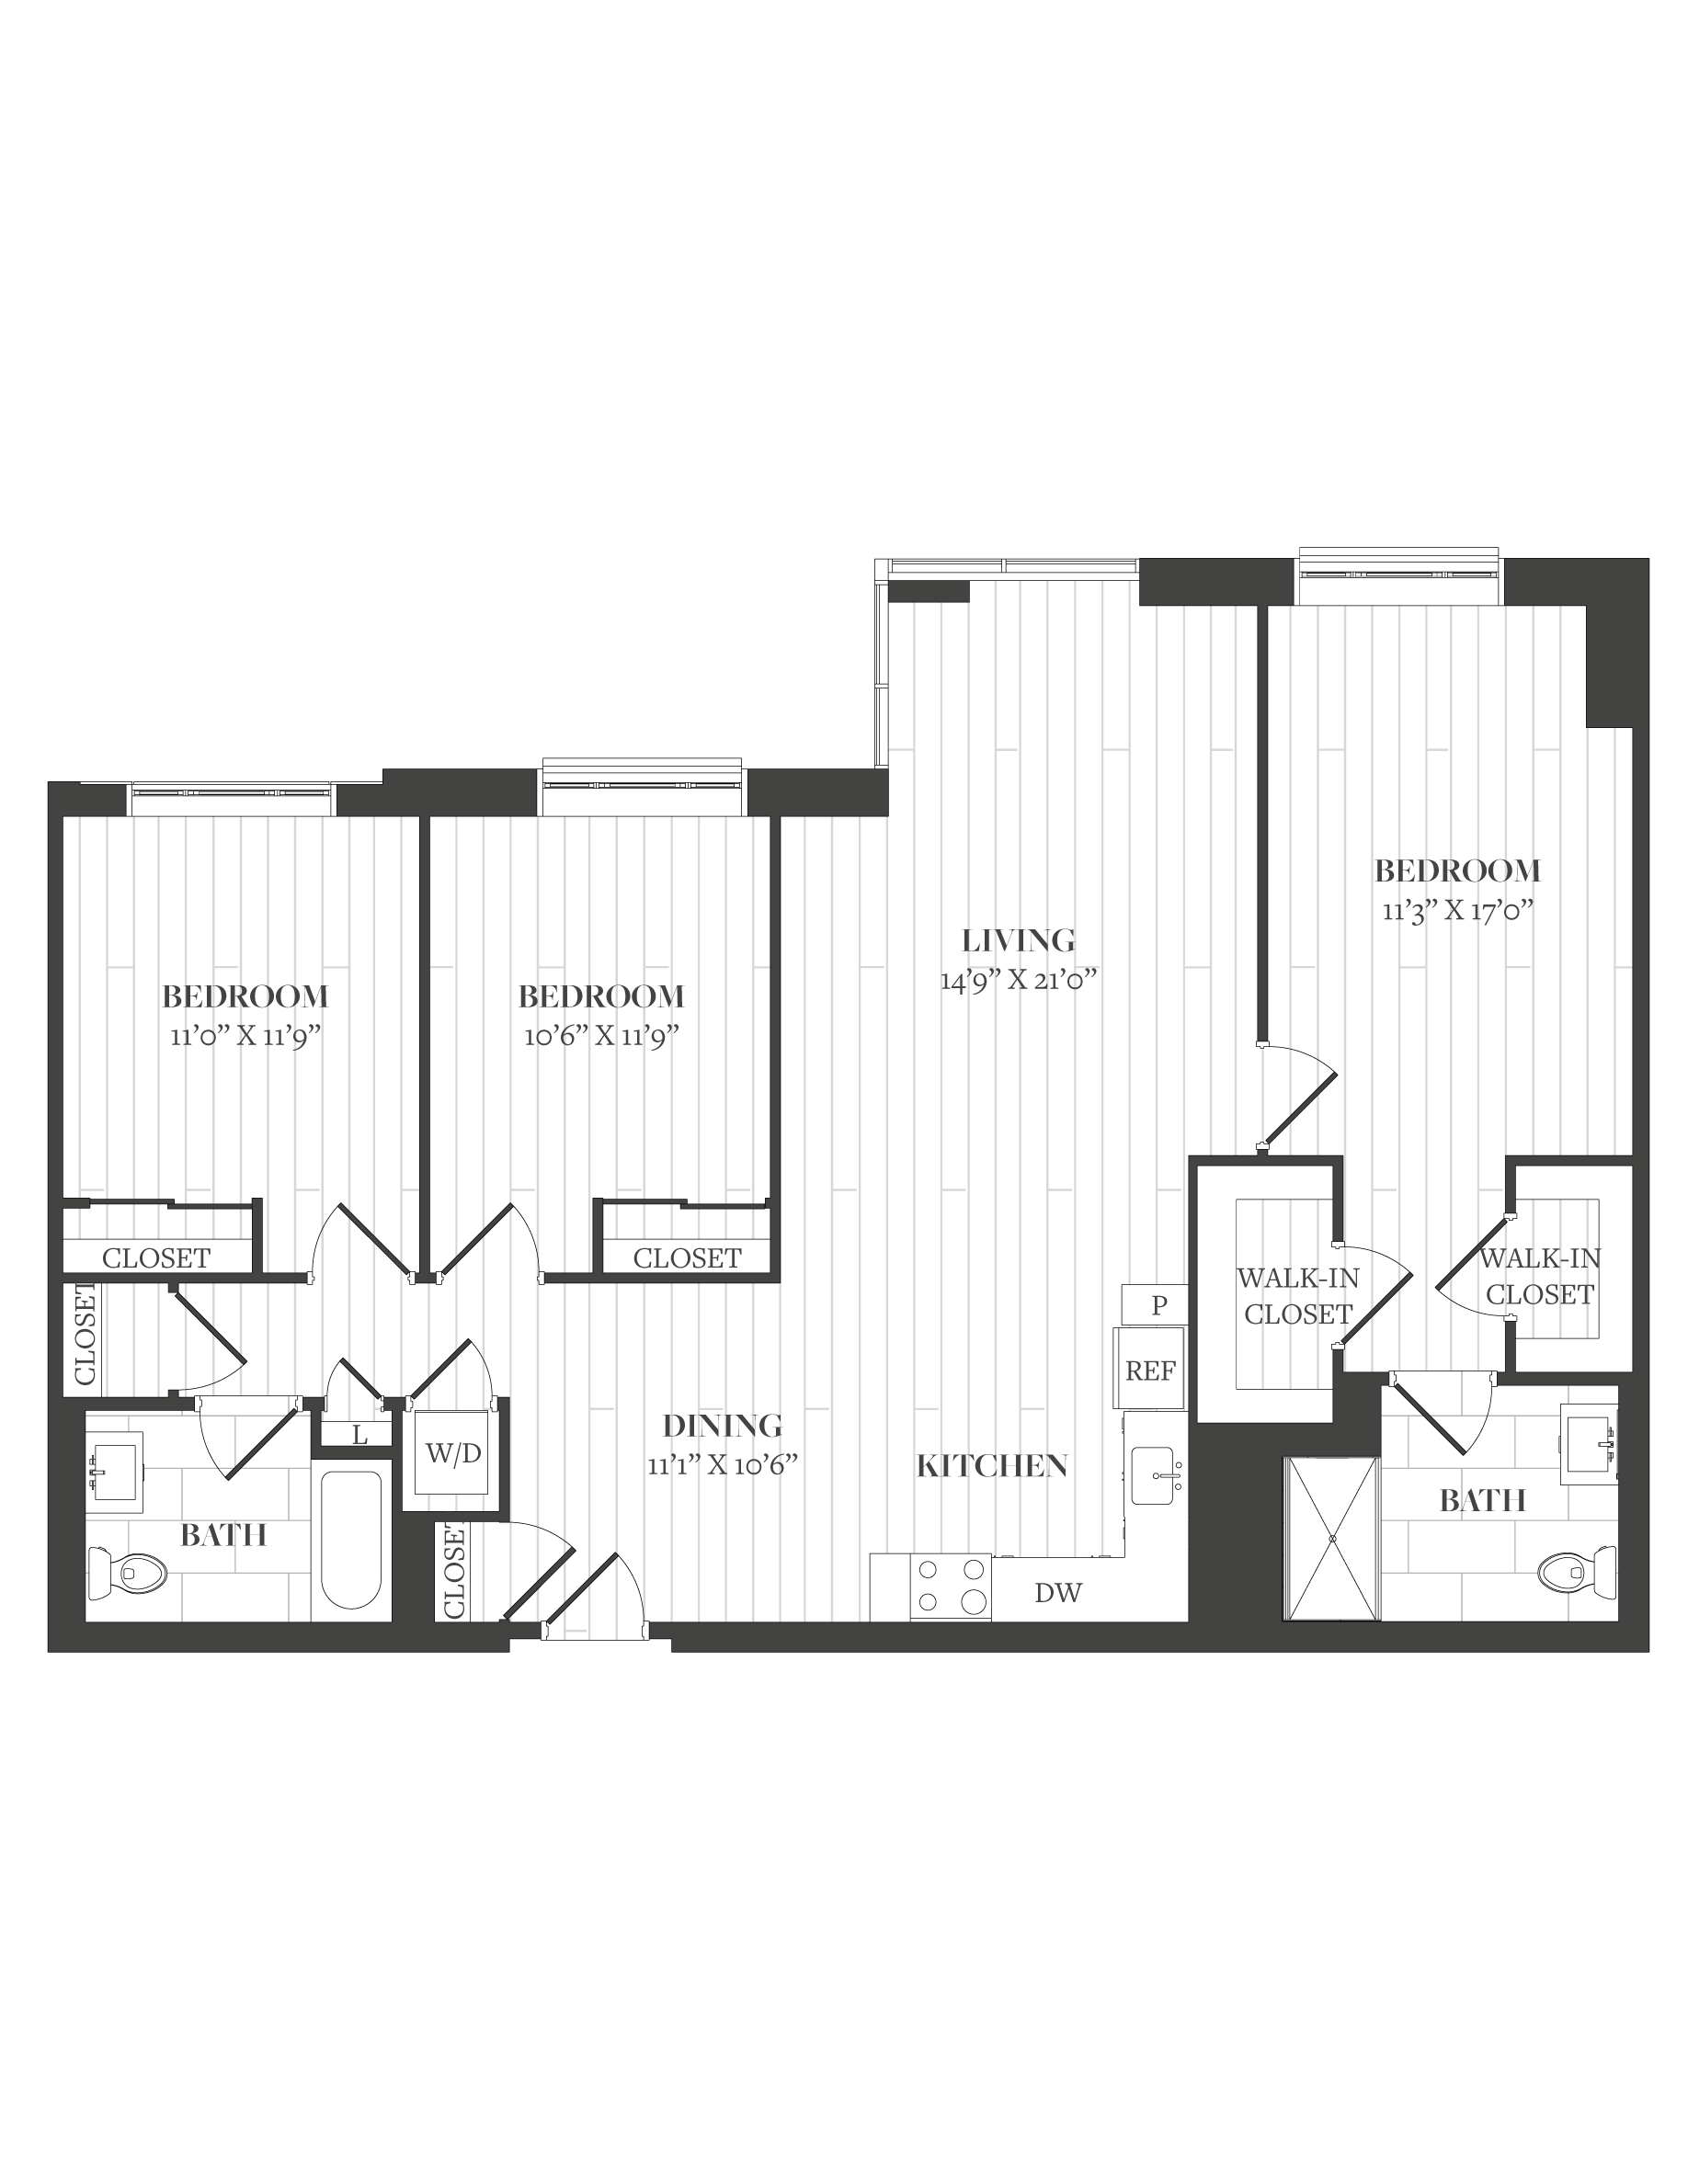 Floorplan image of unit 1405